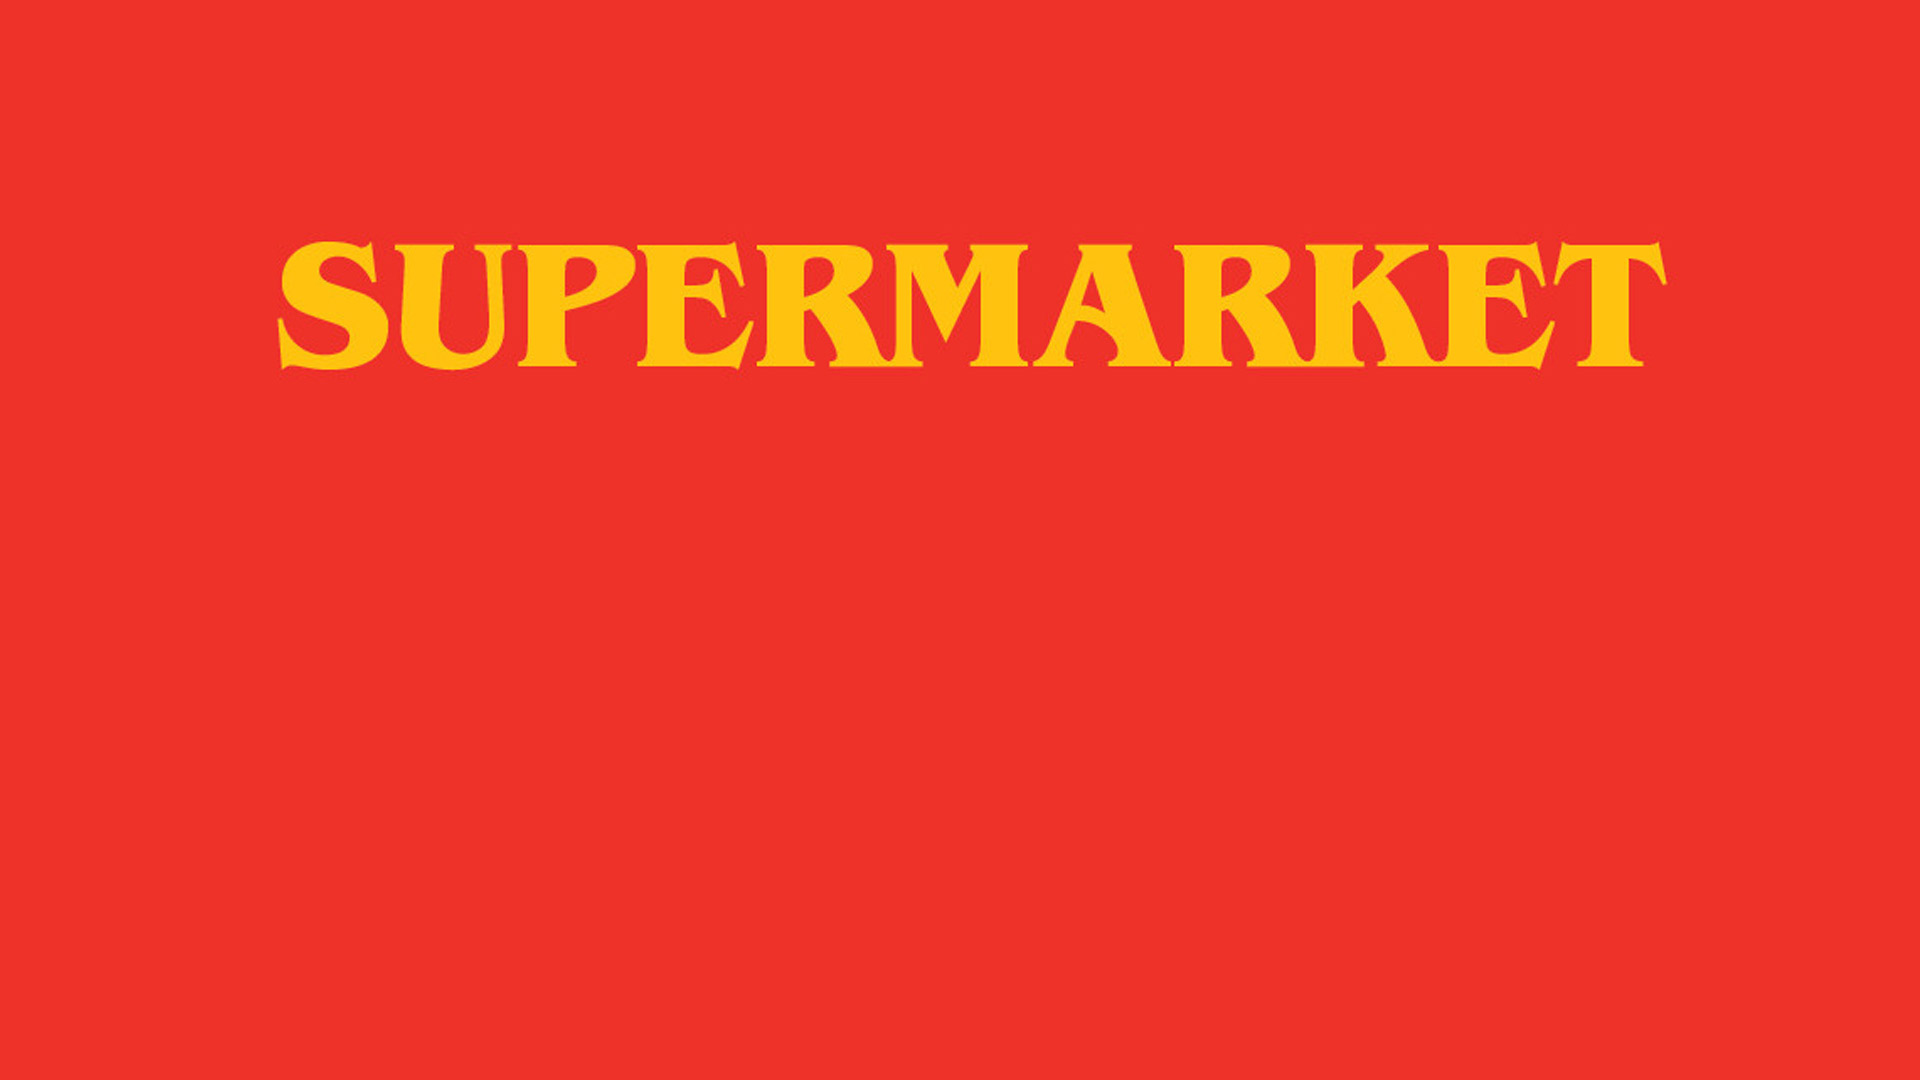 Supermarket (2019)